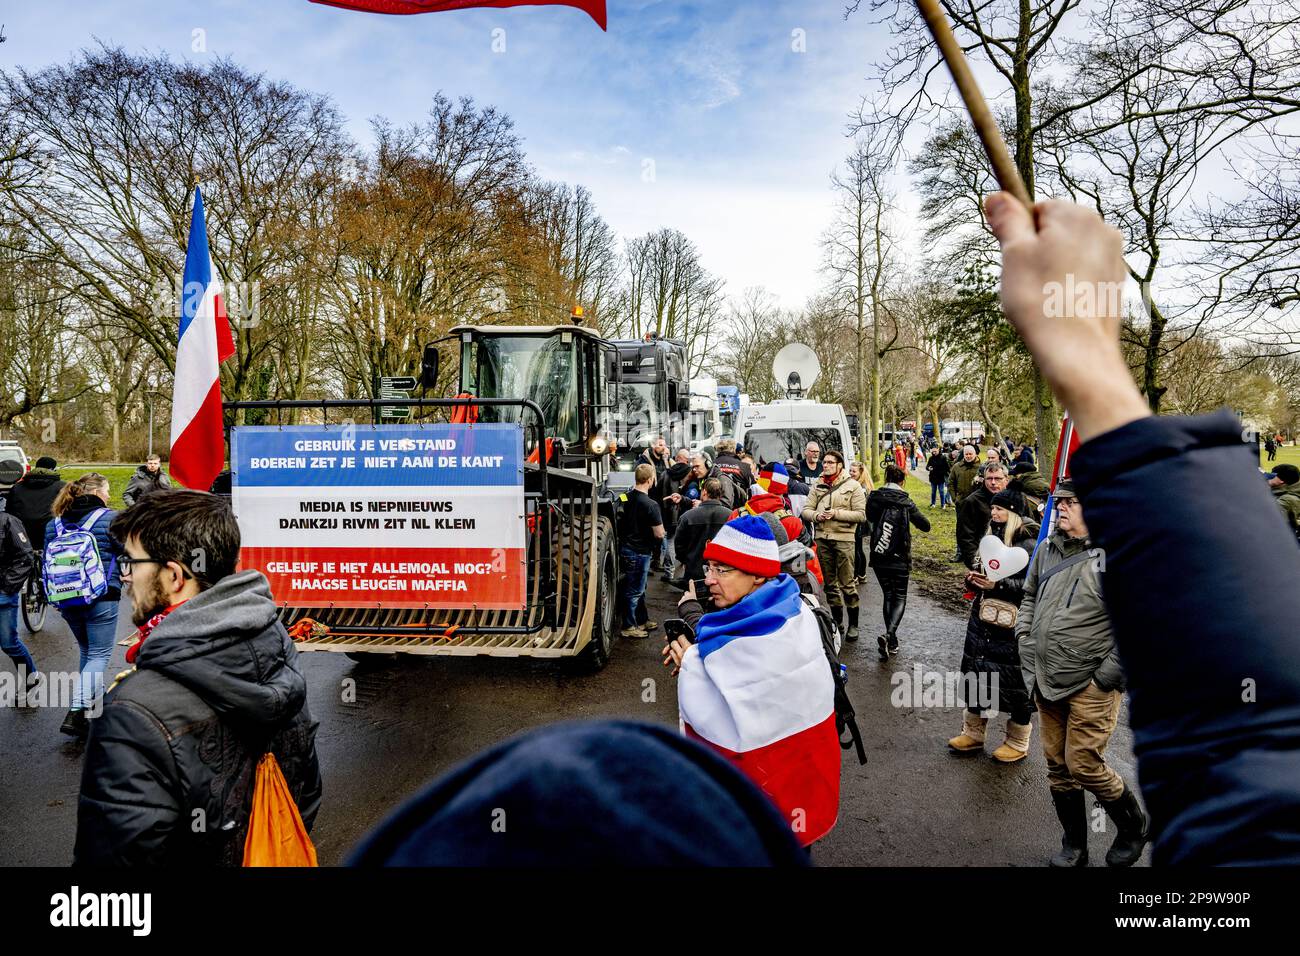 DEN HAAG - Demonstranten während einer Aktion der Farmers Defense Force (FDF) im Zuiderpark in Den Haag. Laut FDF besteht die Protestaktion nicht nur darin, die Ansichten der Landwirte zum Beispiel zur Stickstoffpolitik und zum erzwungenen Buy-out von Landwirten zu äußern, sondern auch, auf alle möglichen anderen sozialen Probleme aufmerksam zu machen, wie die Affäre mit den Aufschlägen und die Gaskrise in Groningen. ANP ROBIN UTRECHT netherlands Out - belgium Out Credit: ANP/Alamy Live News Stockfoto